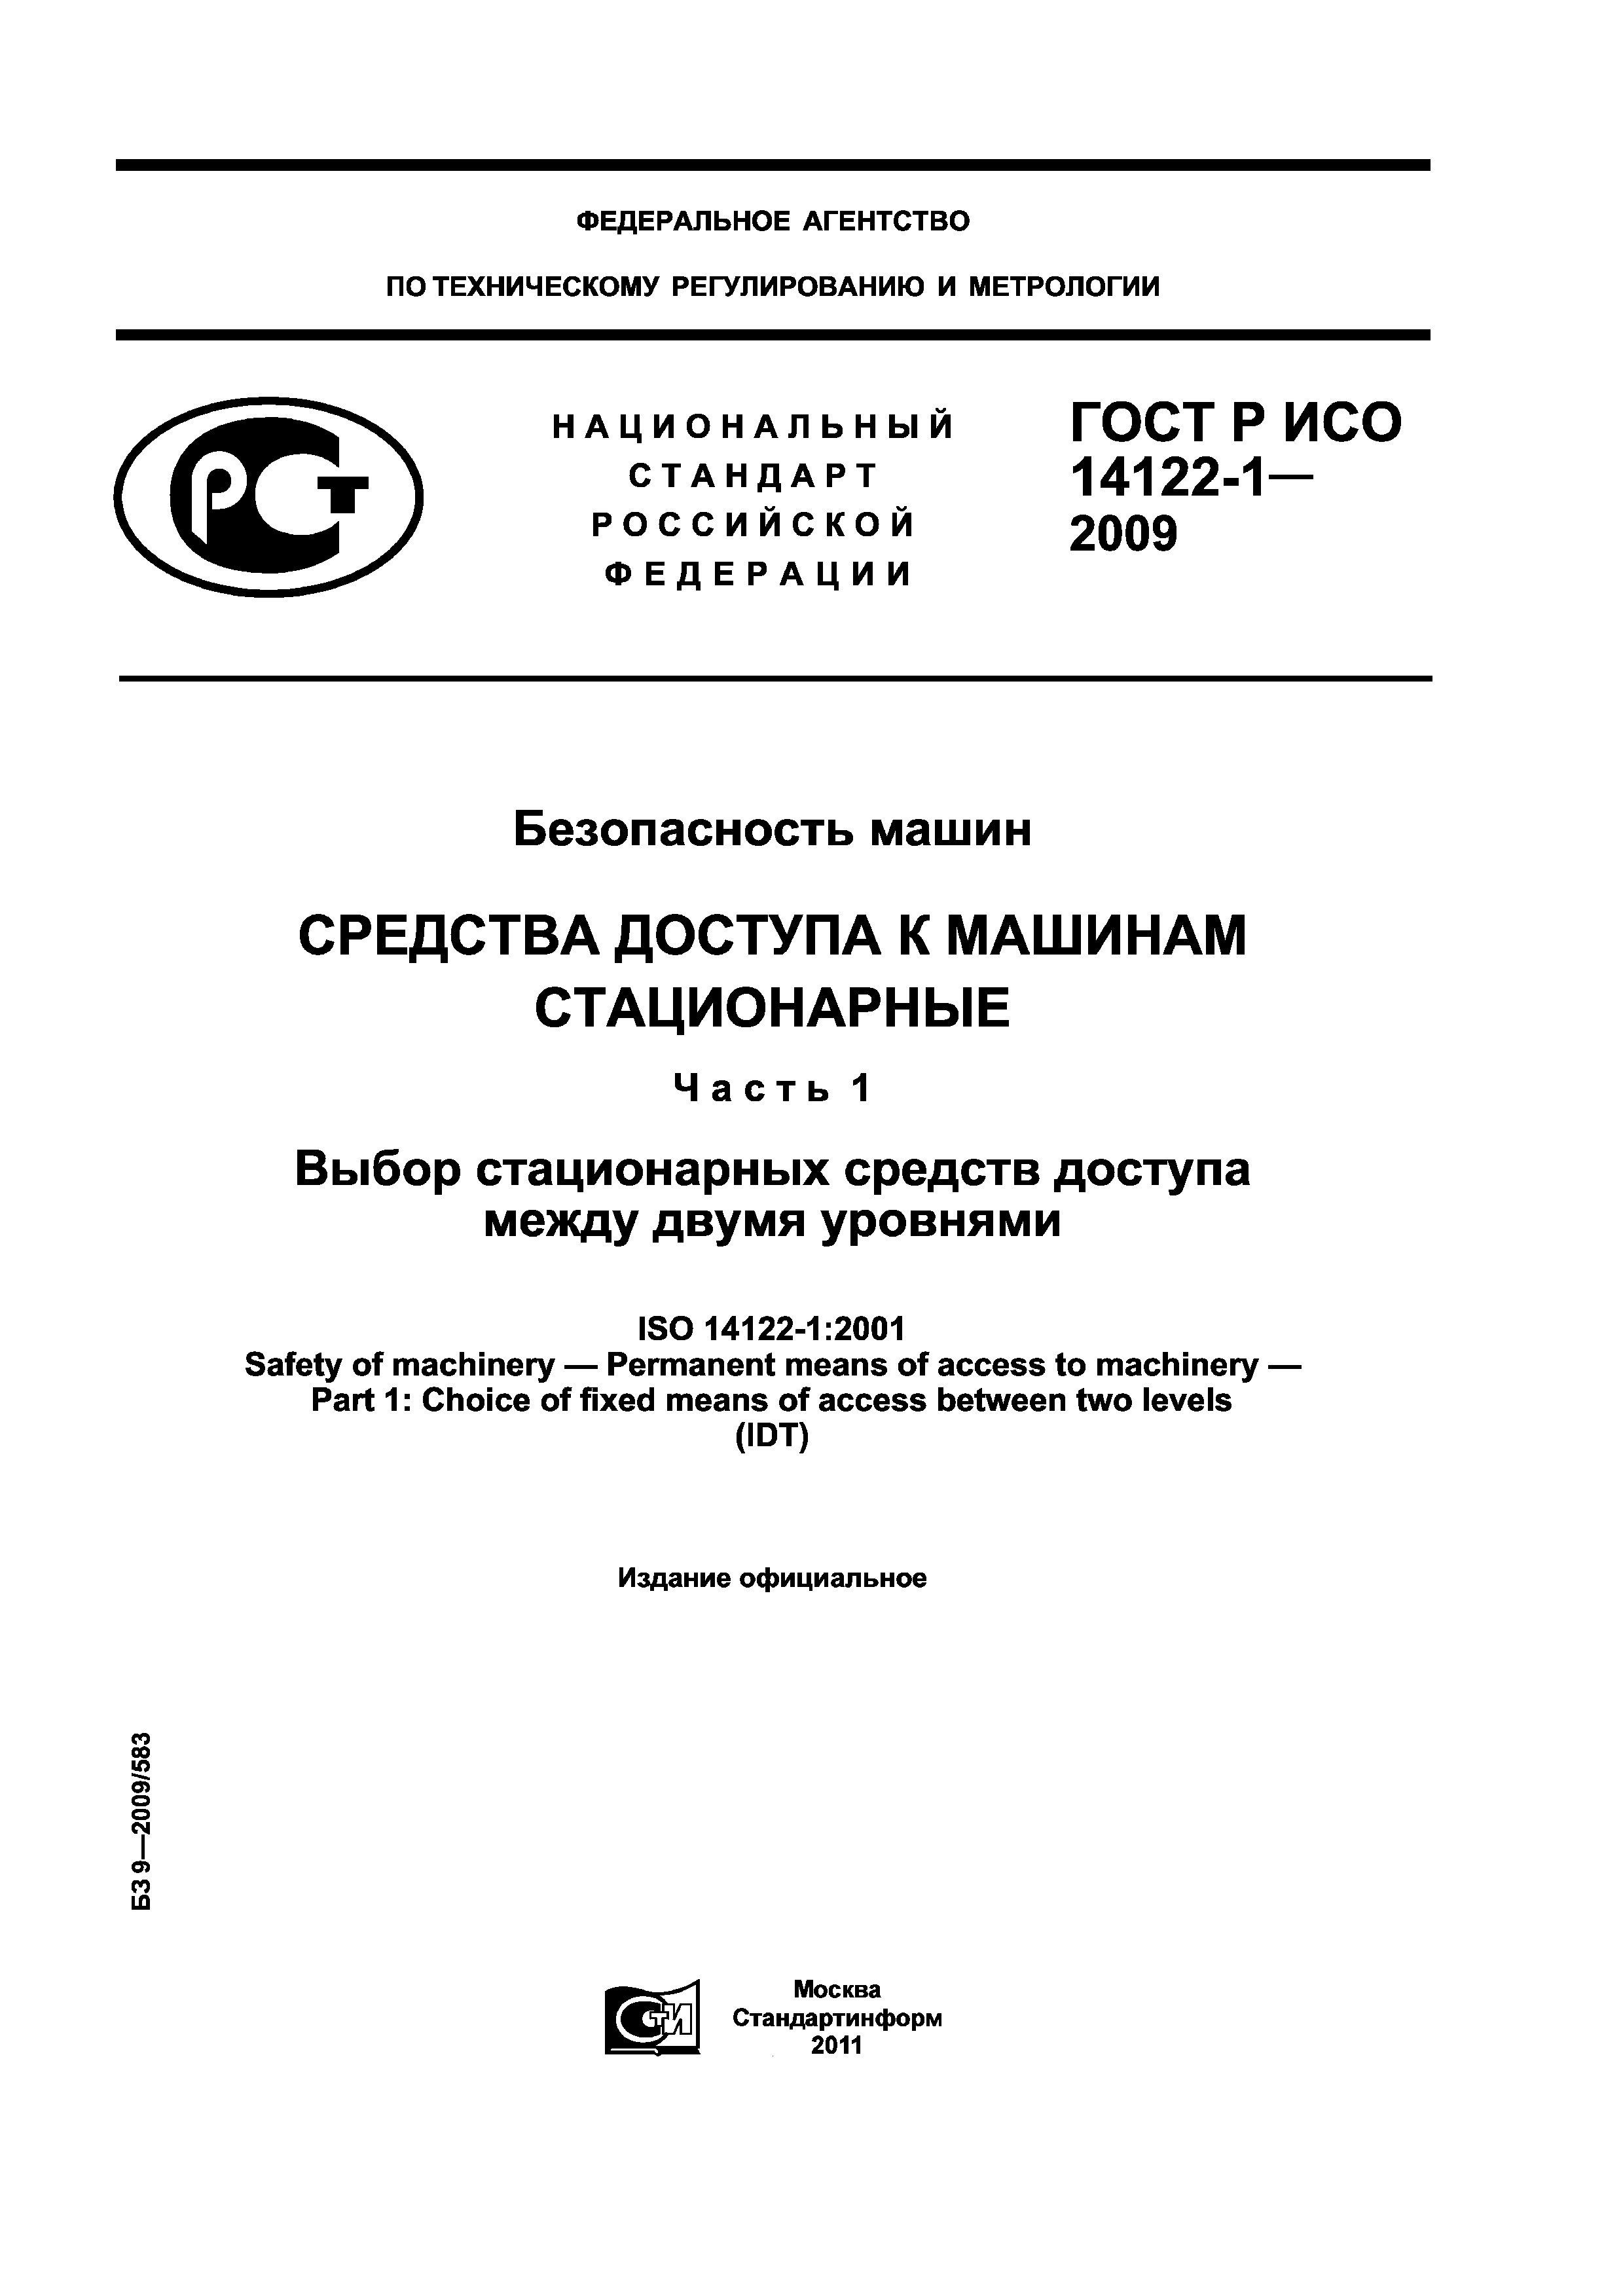 ГОСТ Р ИСО 14122-1-2009